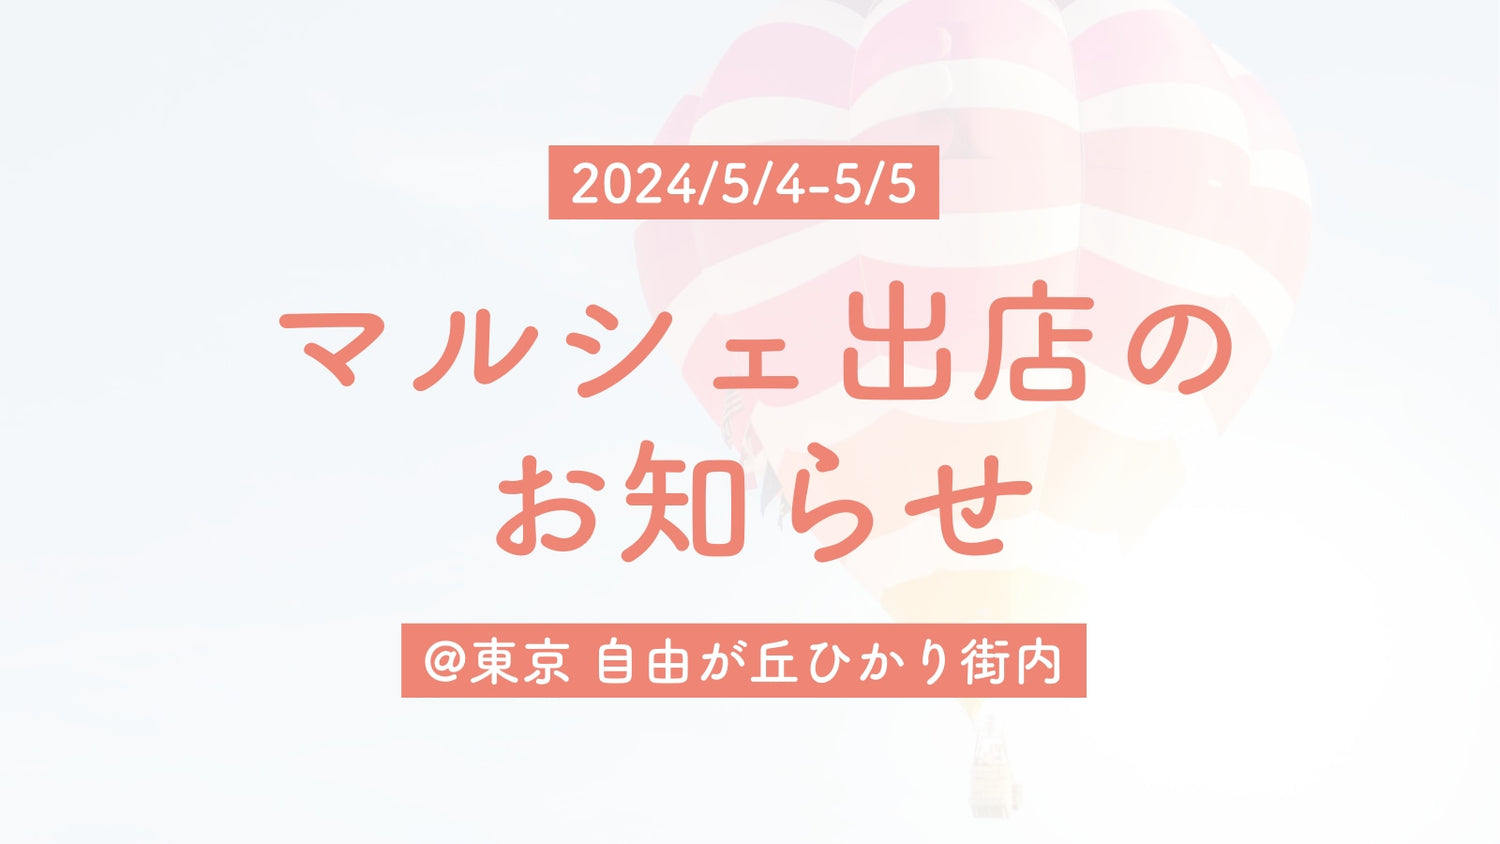 【マルシェ出店】2024/5/4-5/5 @東京 自由が丘ひかり街内